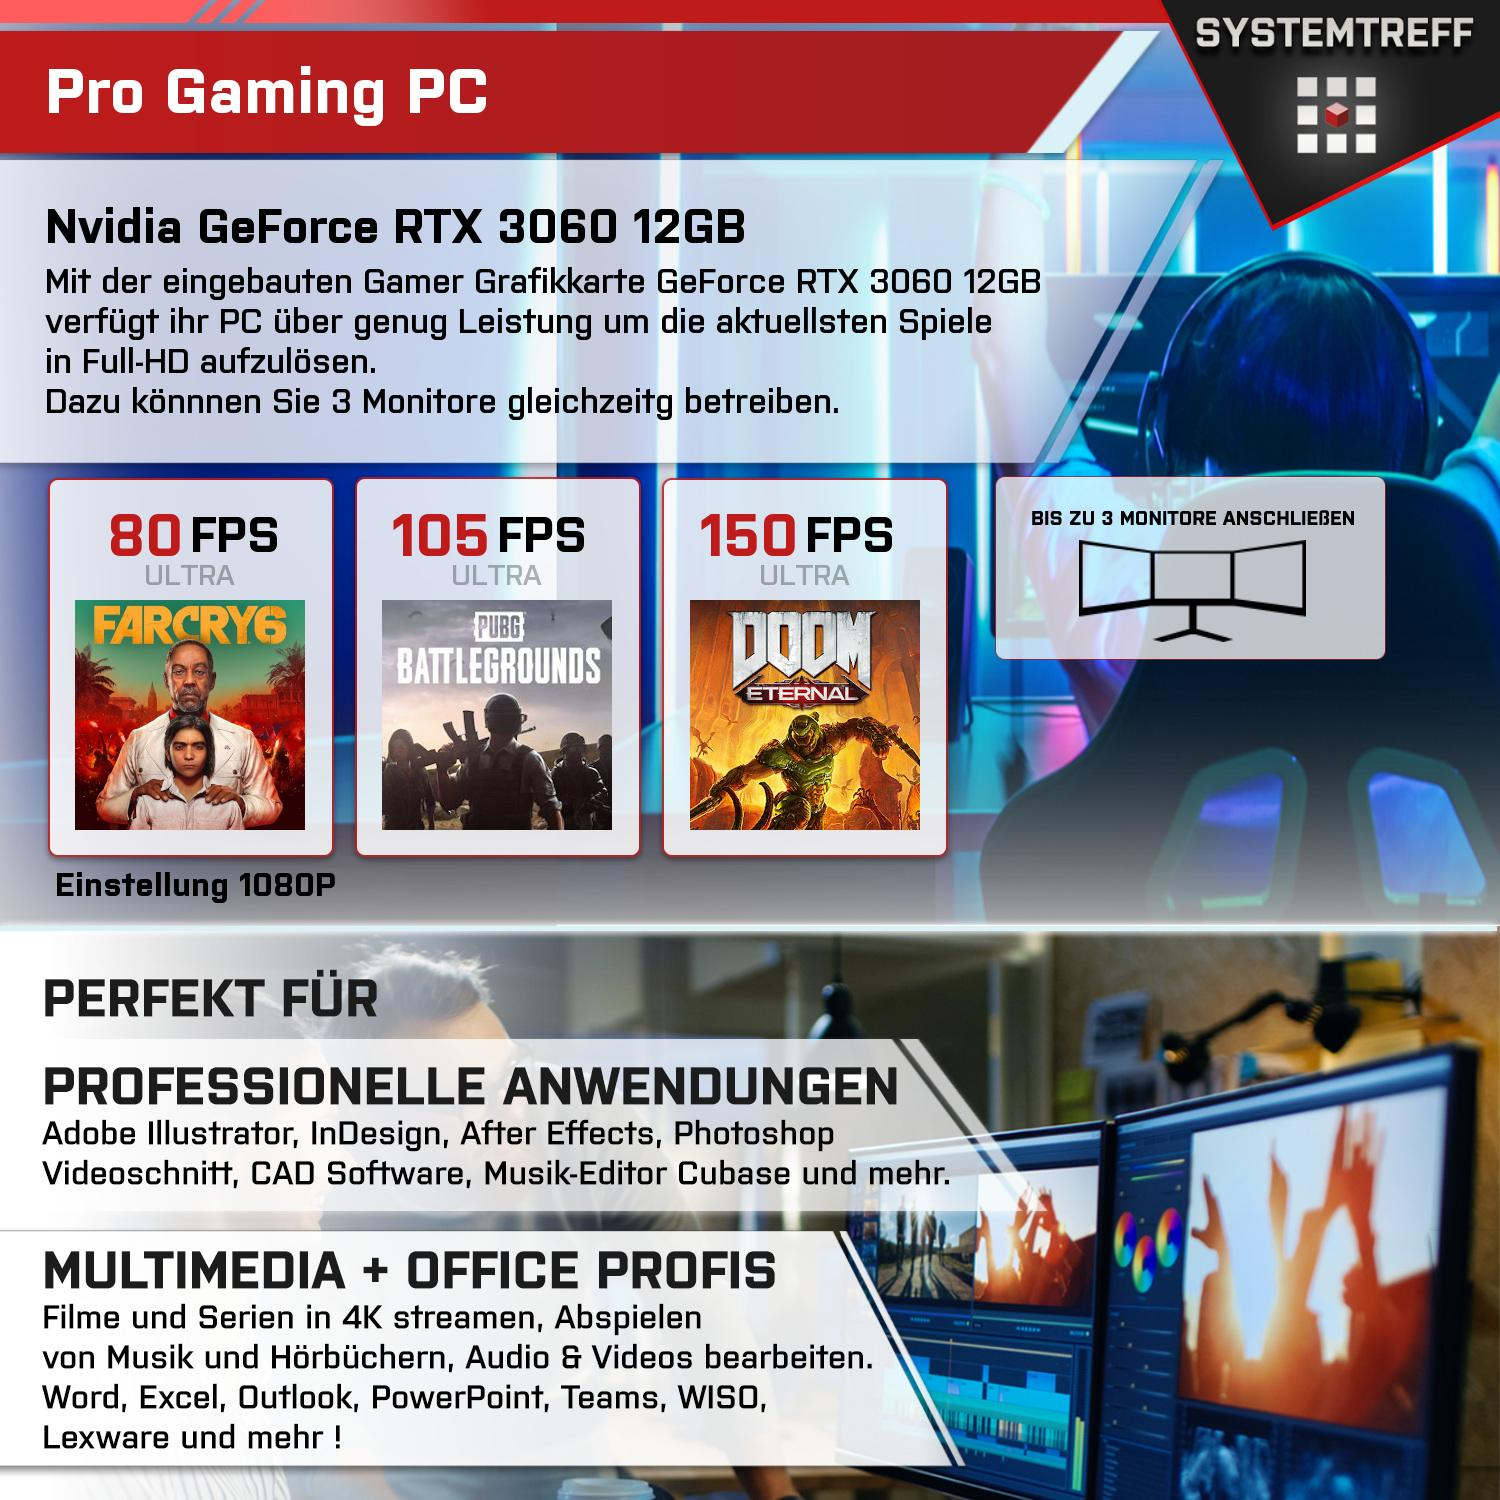 PC 12 Gaming SYSTEMTREFF Ryzen GB 12GB 512 16 Nvidia Komplett 5600X RTX AMD RAM, 5 mit GeForce GB 3060 Prozessor, 5600X, Komplett GB mSSD, GDDR6,